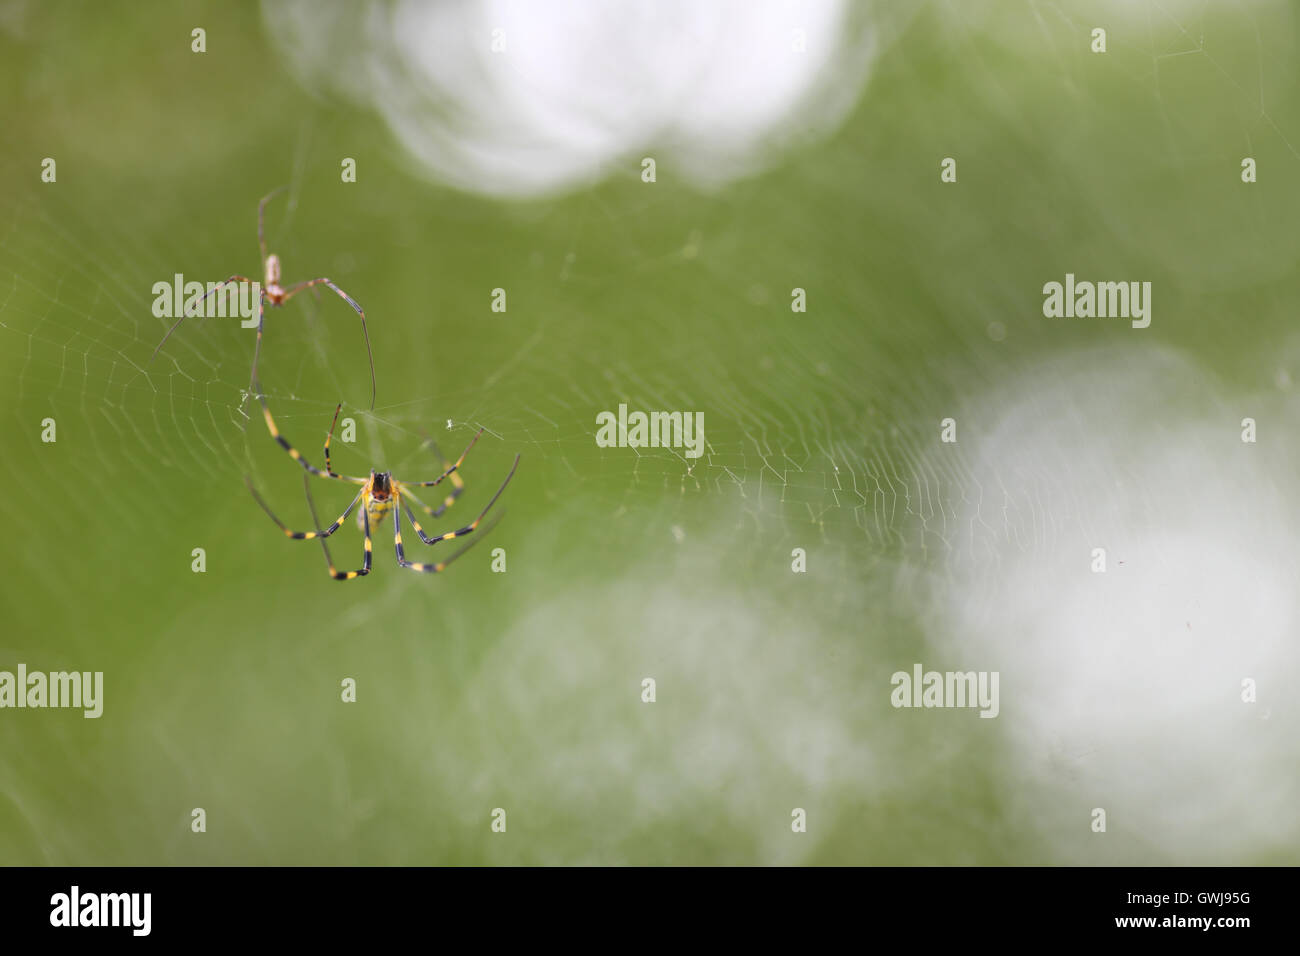 Eine Nahaufnahme von 2 kleinen gelben und schwarzen Spinnen auf einer Webseite mit einem wunderschön verschwommenen Hintergrund. Stockfoto